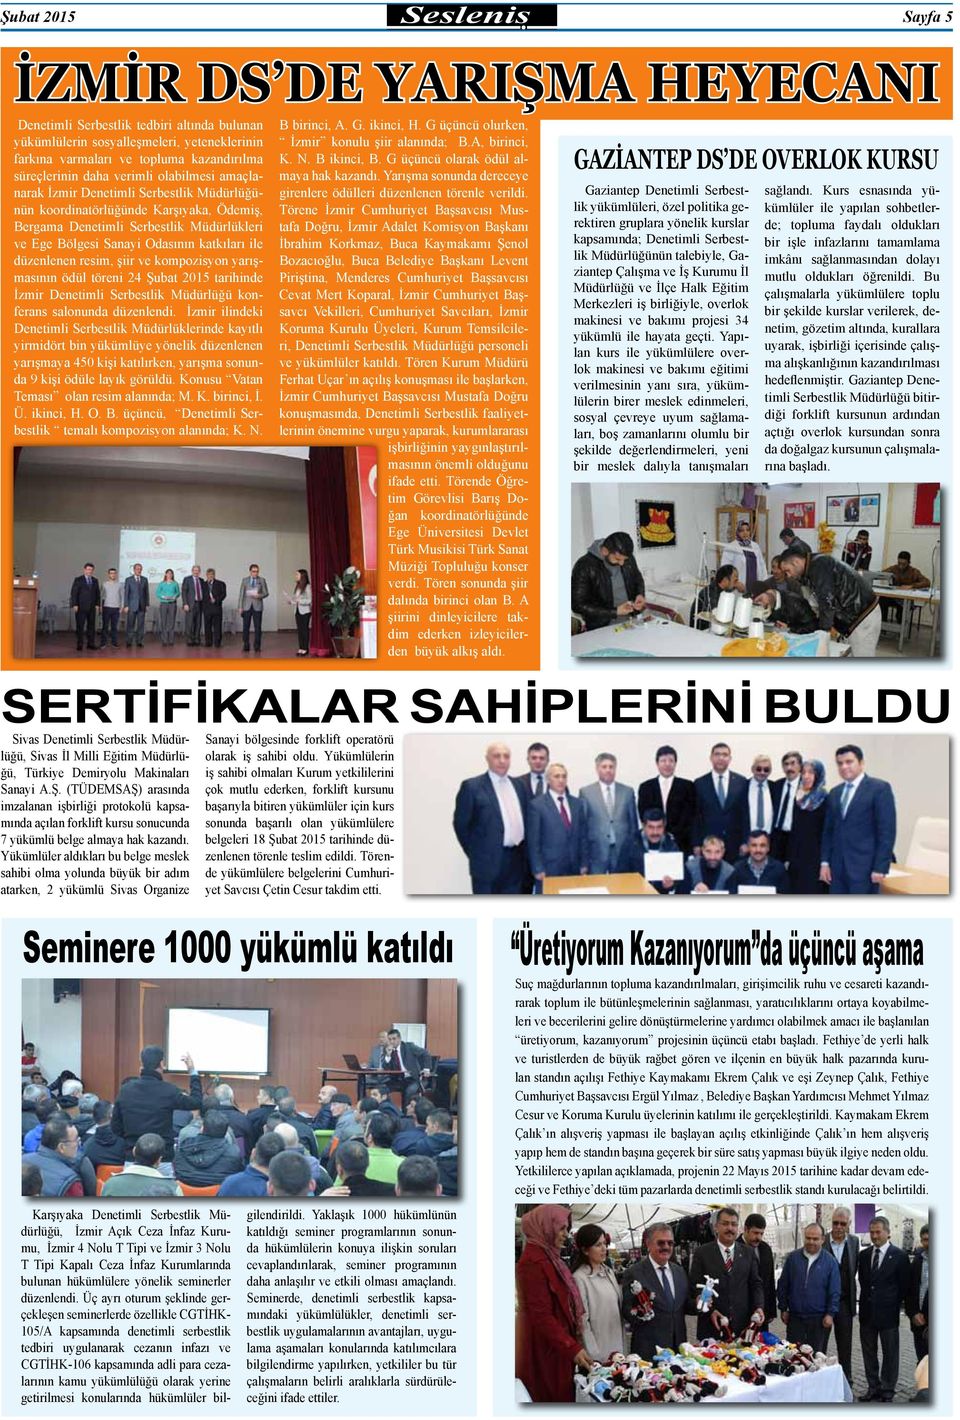 katkıları ile düzenlenen resim, şiir ve kompozisyon yarışmasının ödül töreni 24 Şubat 2015 tarihinde İzmir Denetimli Serbestlik Müdürlüğü konferans salonunda düzenlendi.